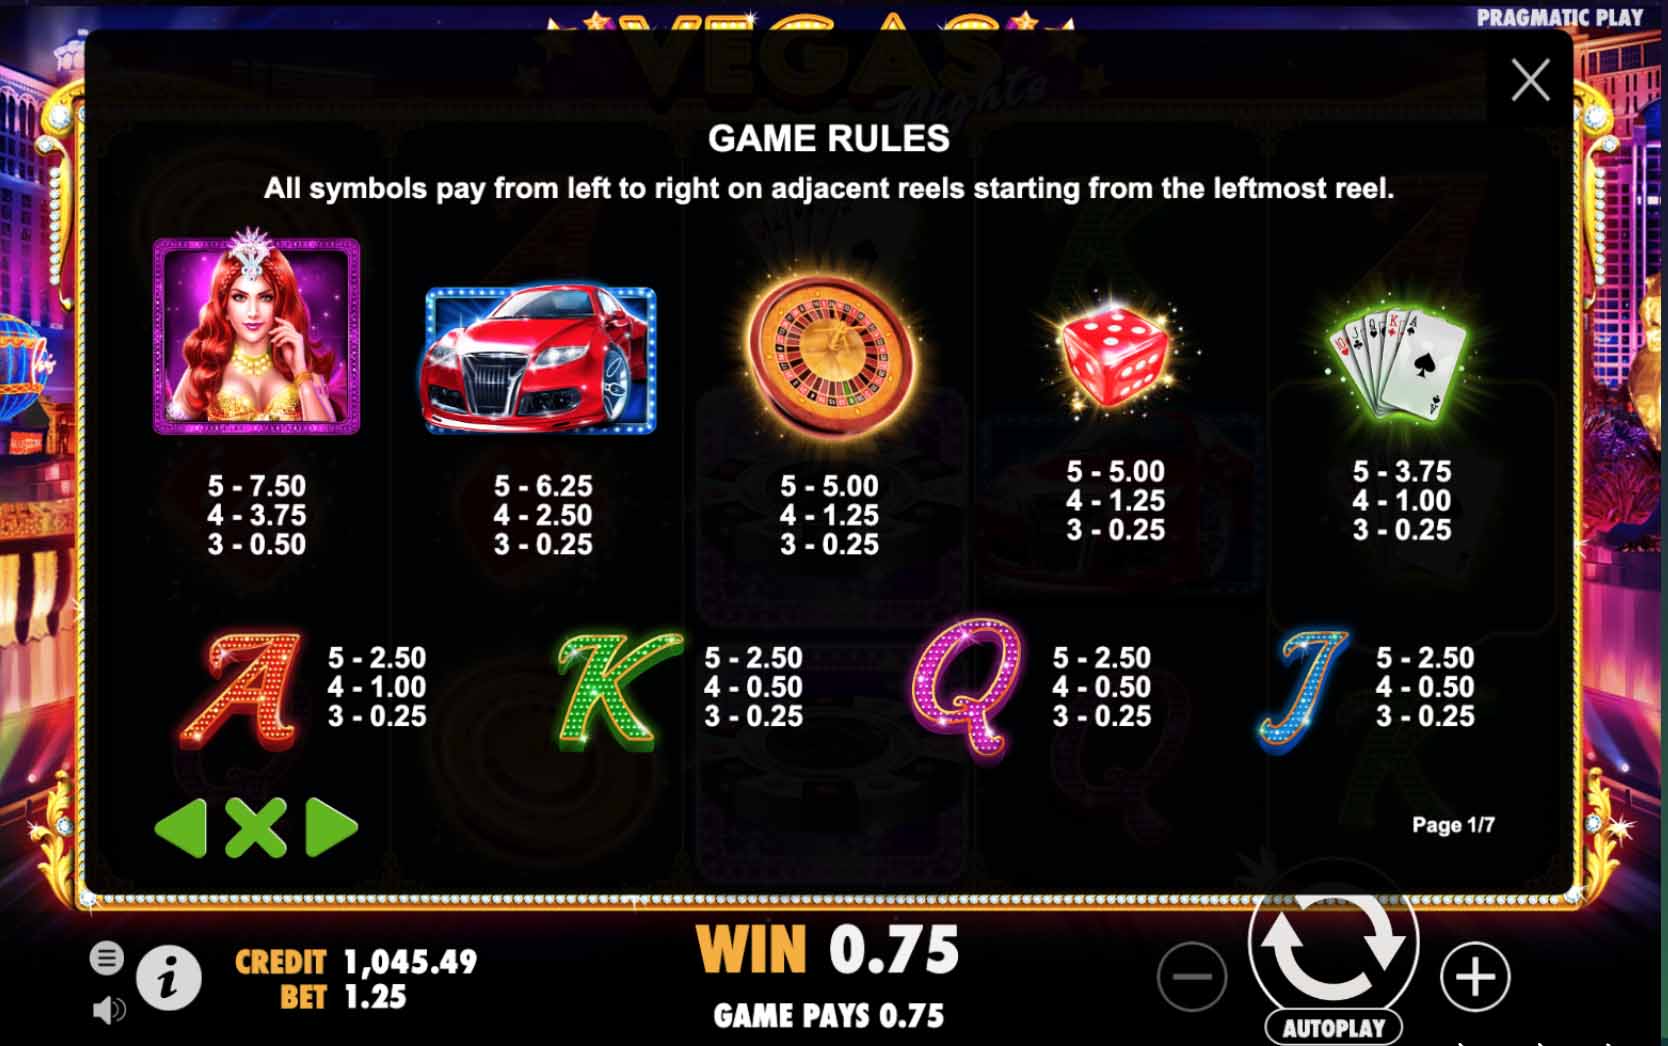 Kingfun: Hướng dẫn chơi slot game Đêm Vegas